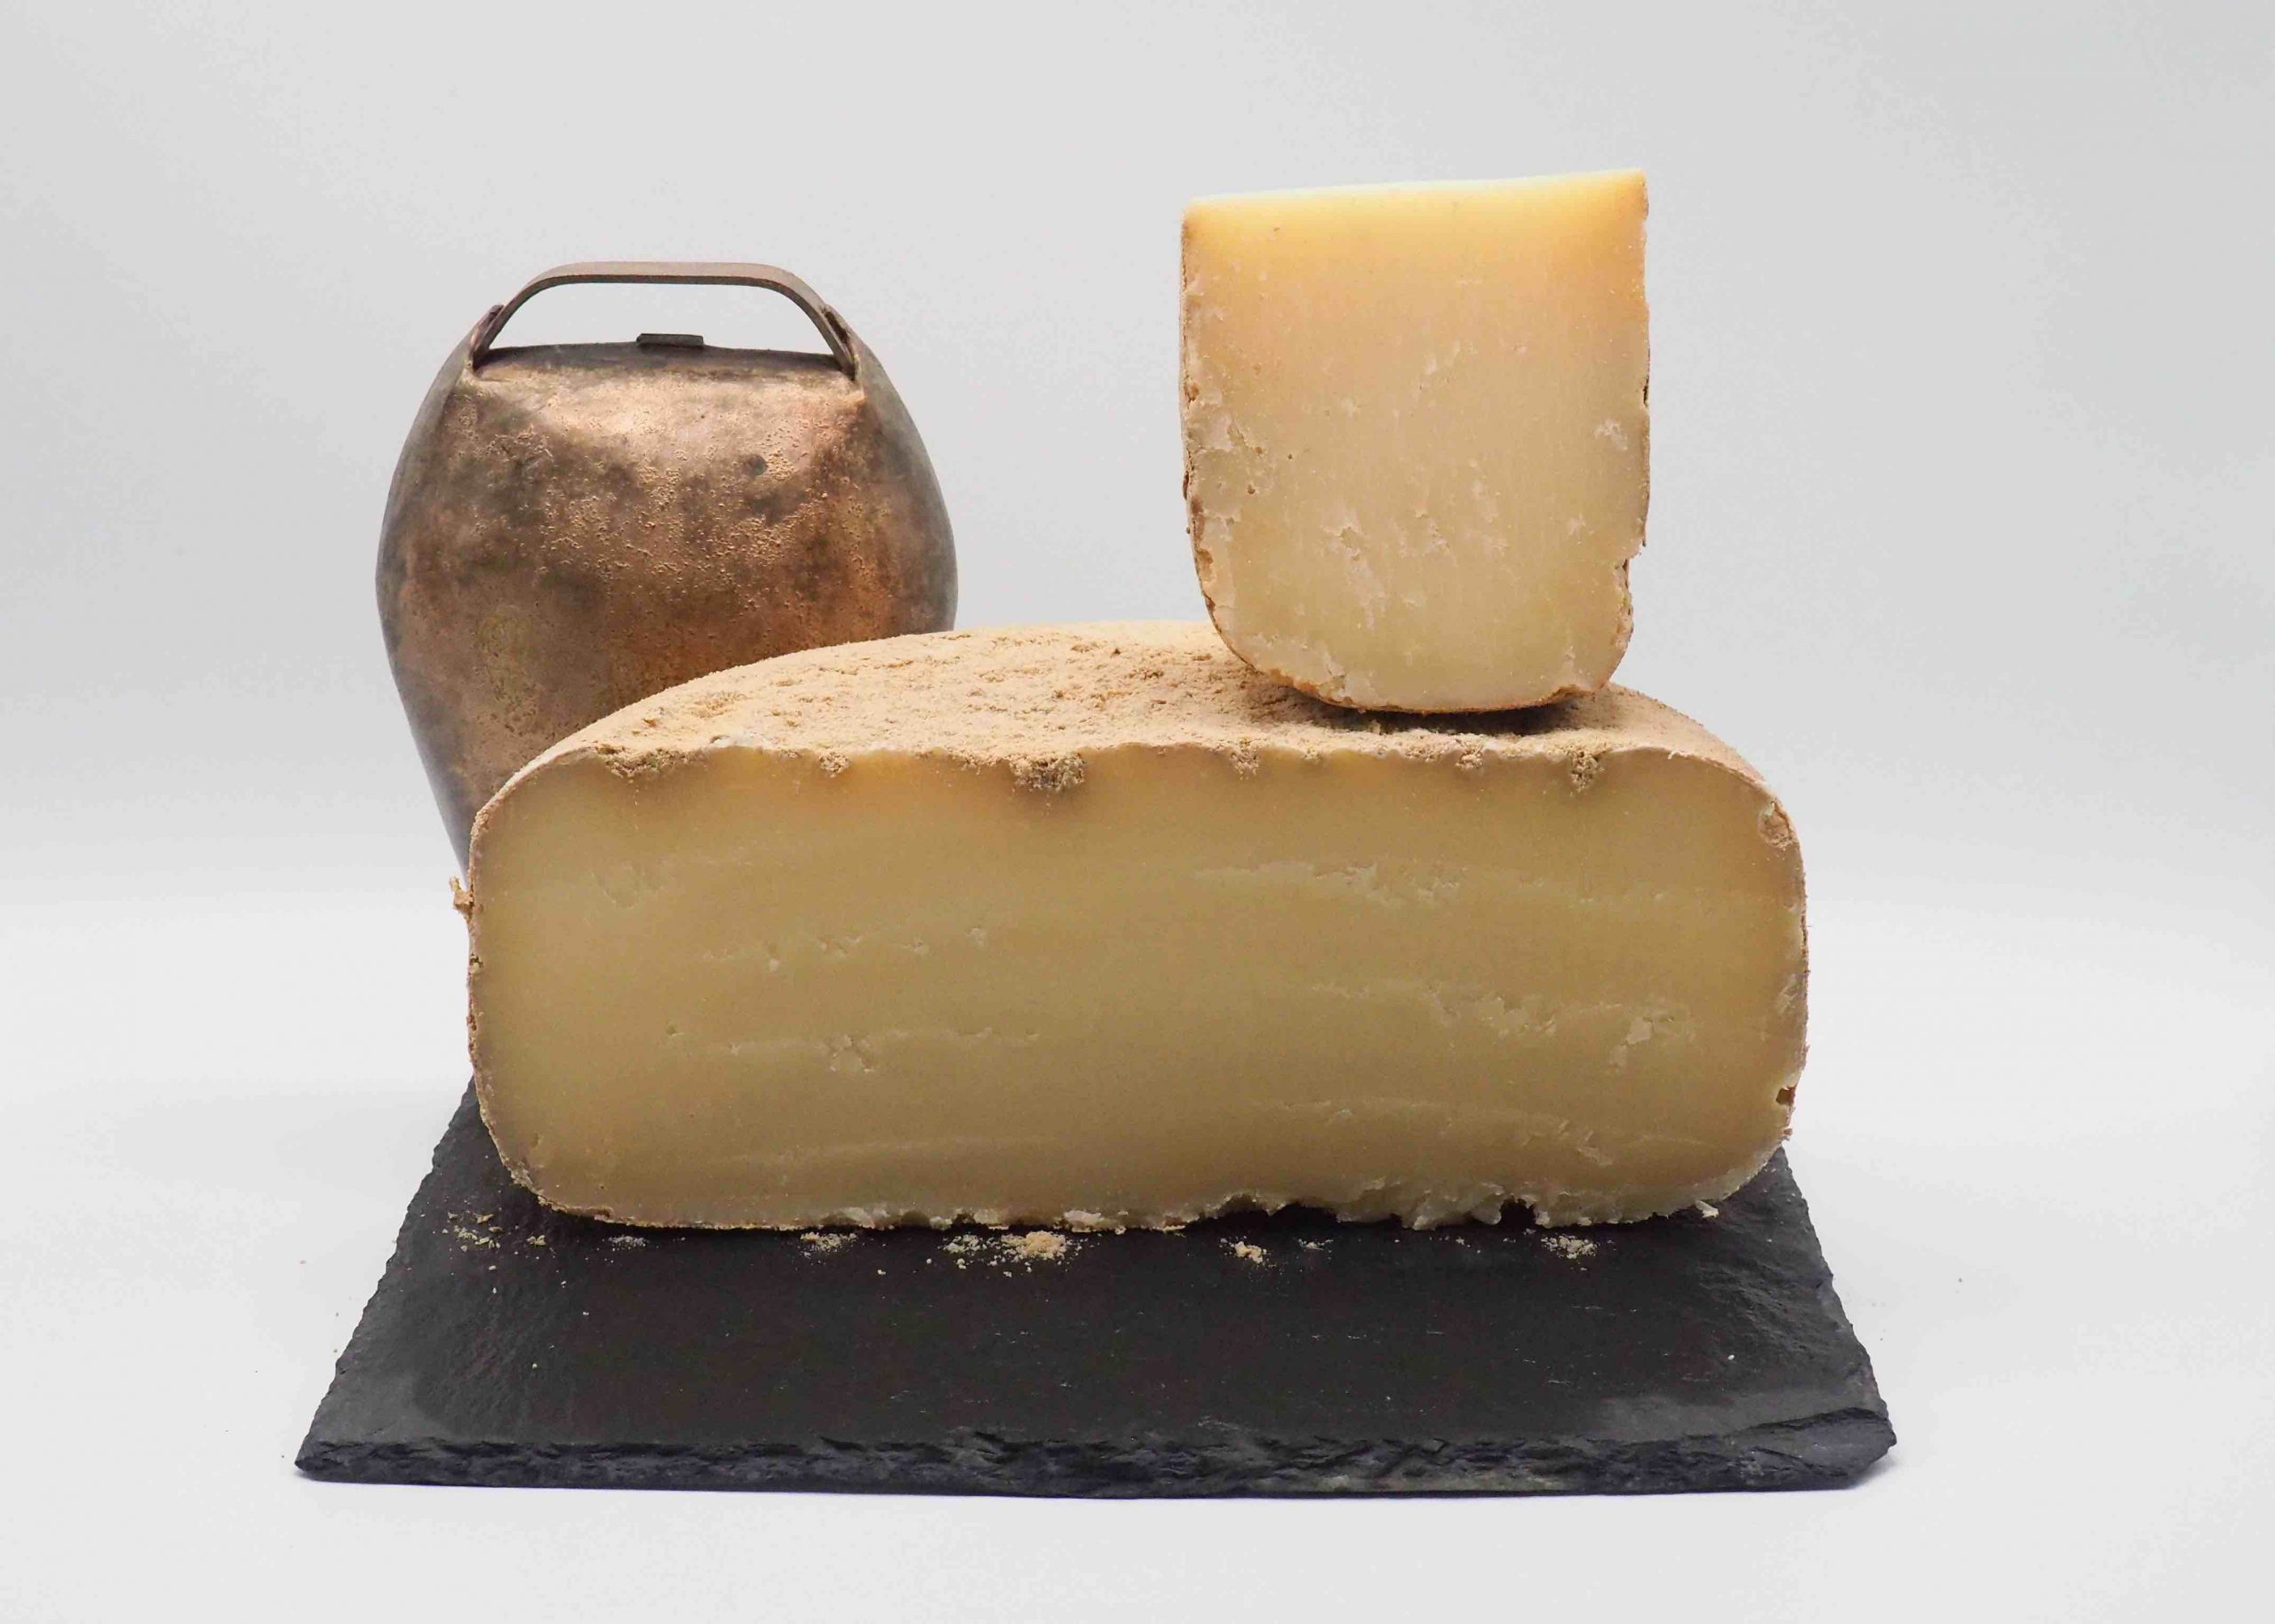 le vieux Napoléon est un fromage typique des Pyrénées alliant finesse et richesse au palais